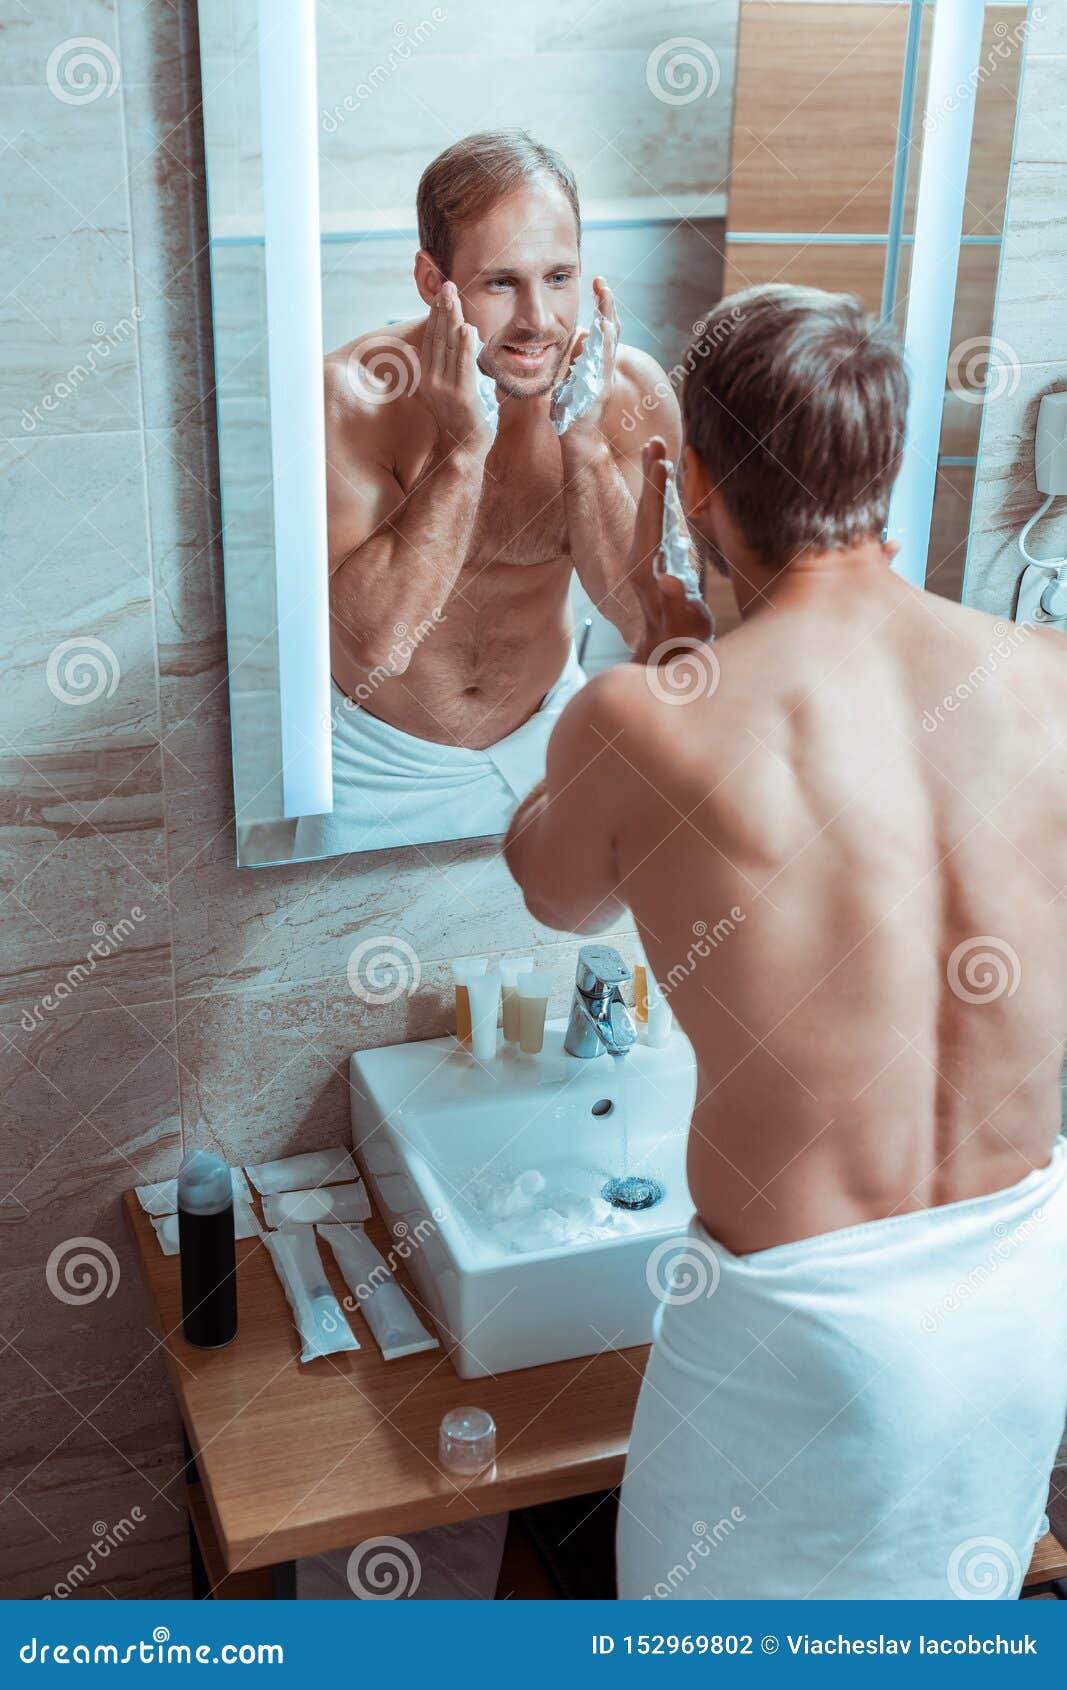 Naked Man Shaving Himself